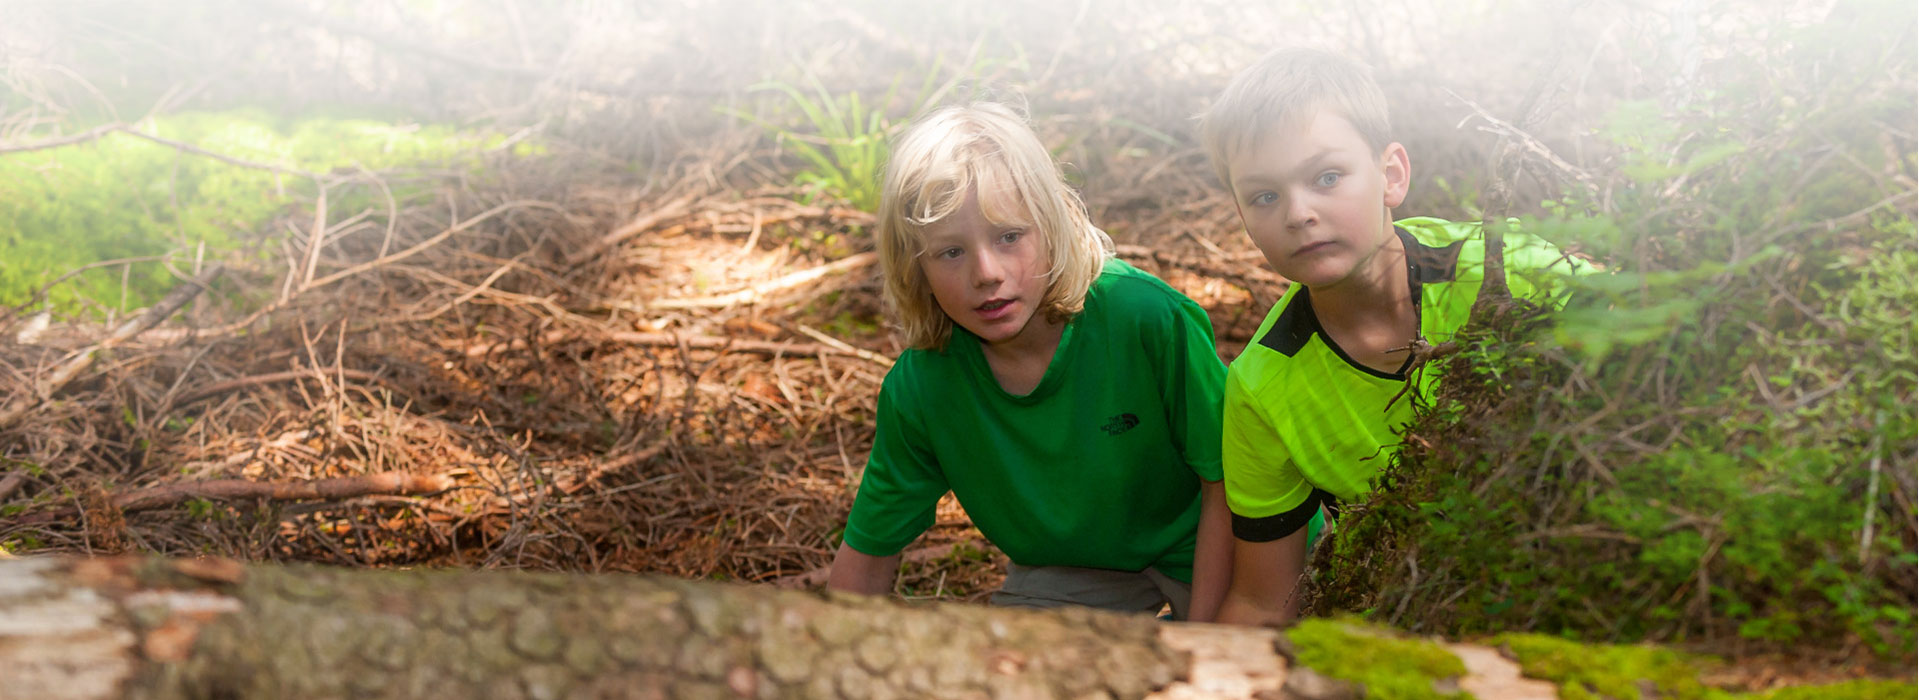 zwei Jungen schauen am rechten Bildrand hinter einem Baum hervor © Luis Scheuermann (Nationalpark Schwarzwald)